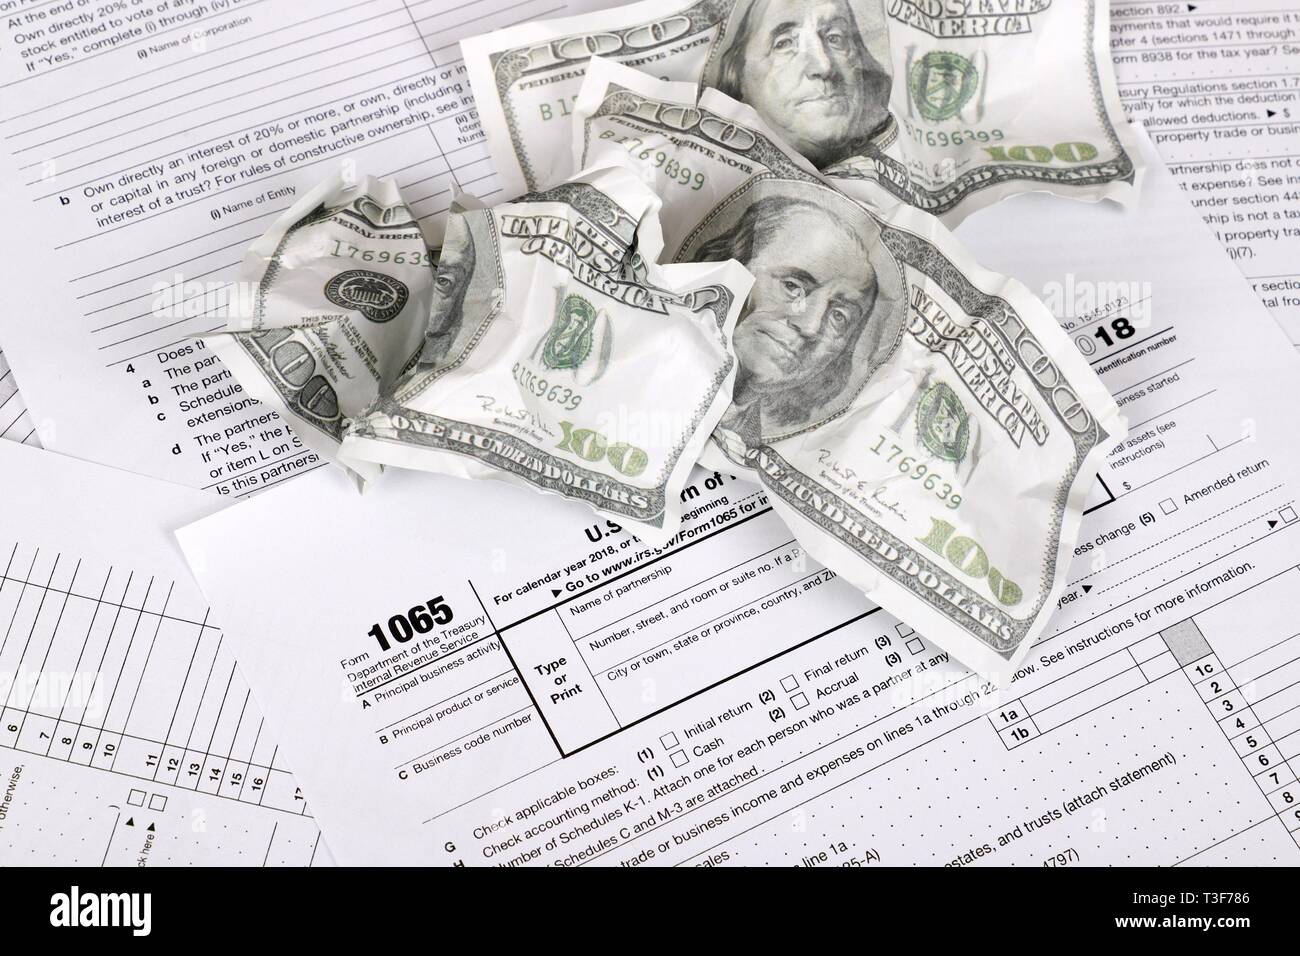 1065 forma fiscale si trova nei pressi di accartocciata Hundred Dollar Bills su un tavolo. Noi tornare per reddito parentship Foto Stock